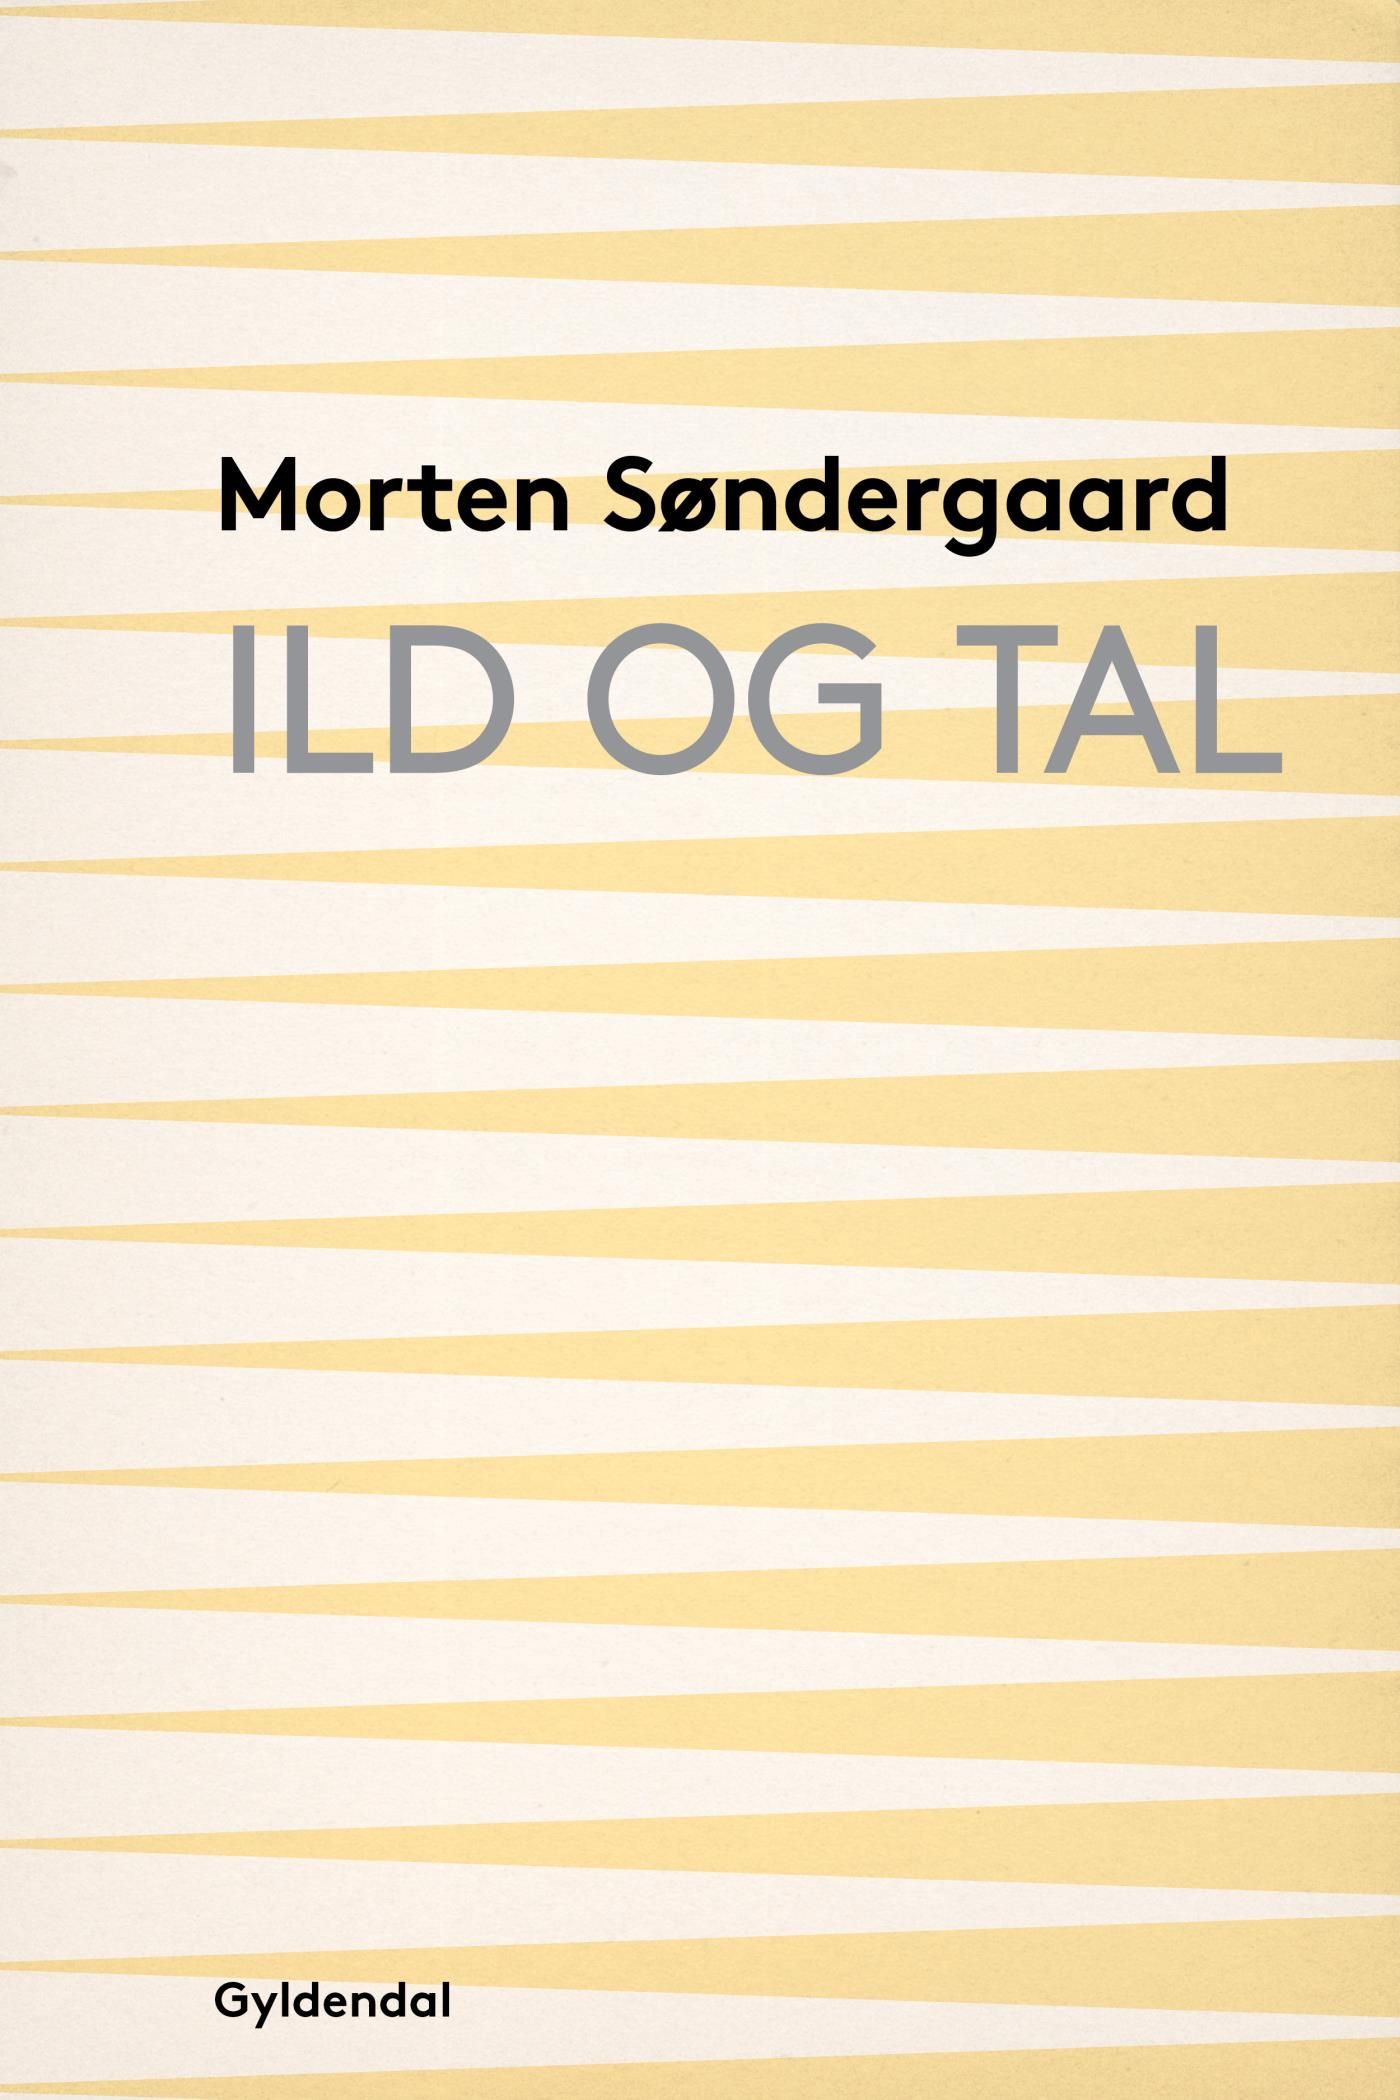 Ild og tal, e-bok av Morten Søndergaard